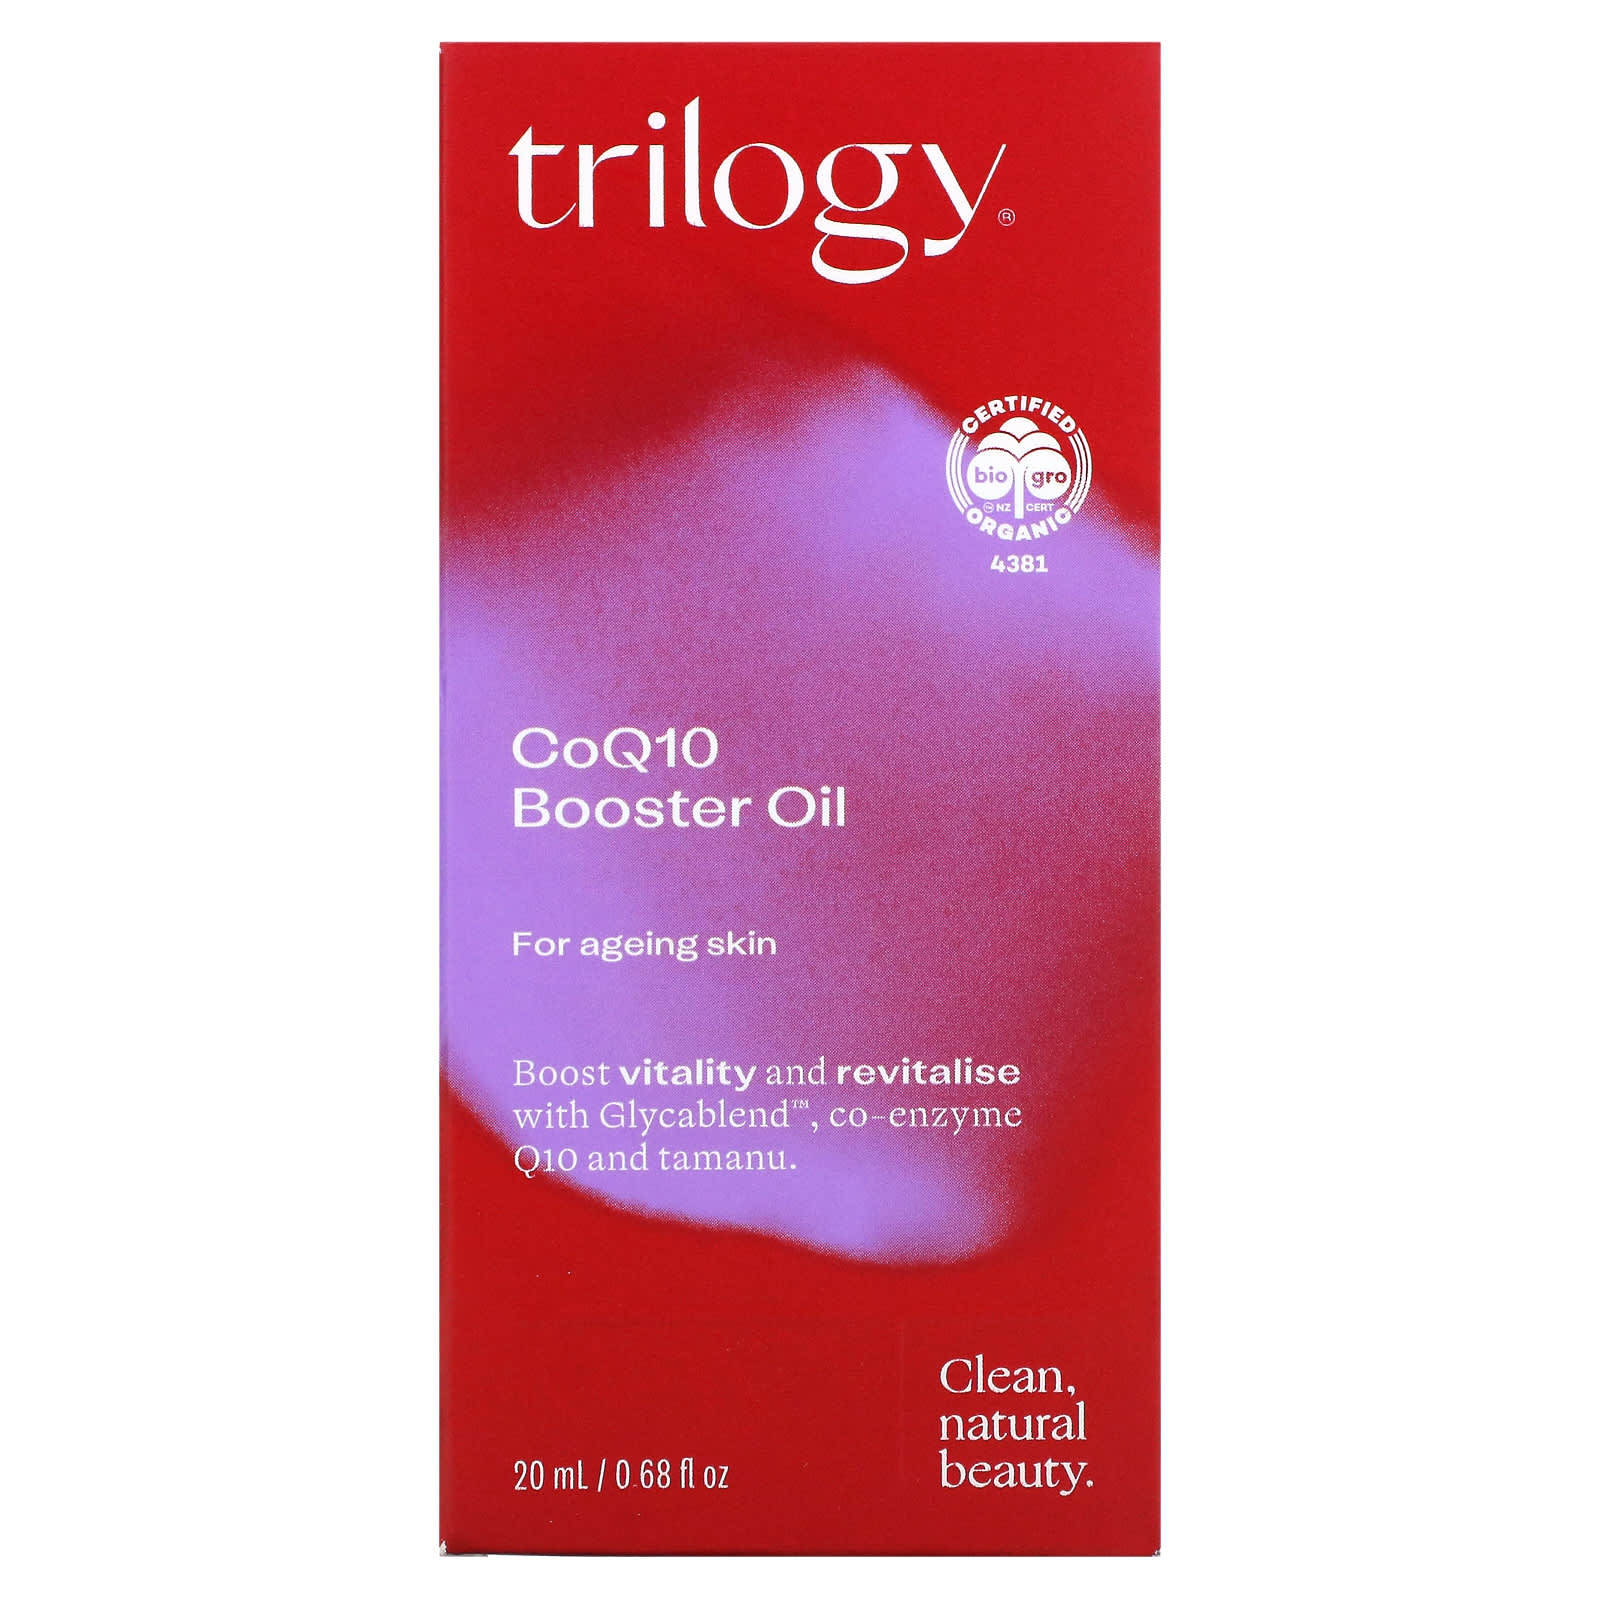 Vervagen Mauve rechtdoor Trilogy, CoQ10 Booster Oil, 0.68 fl oz (20 ml)